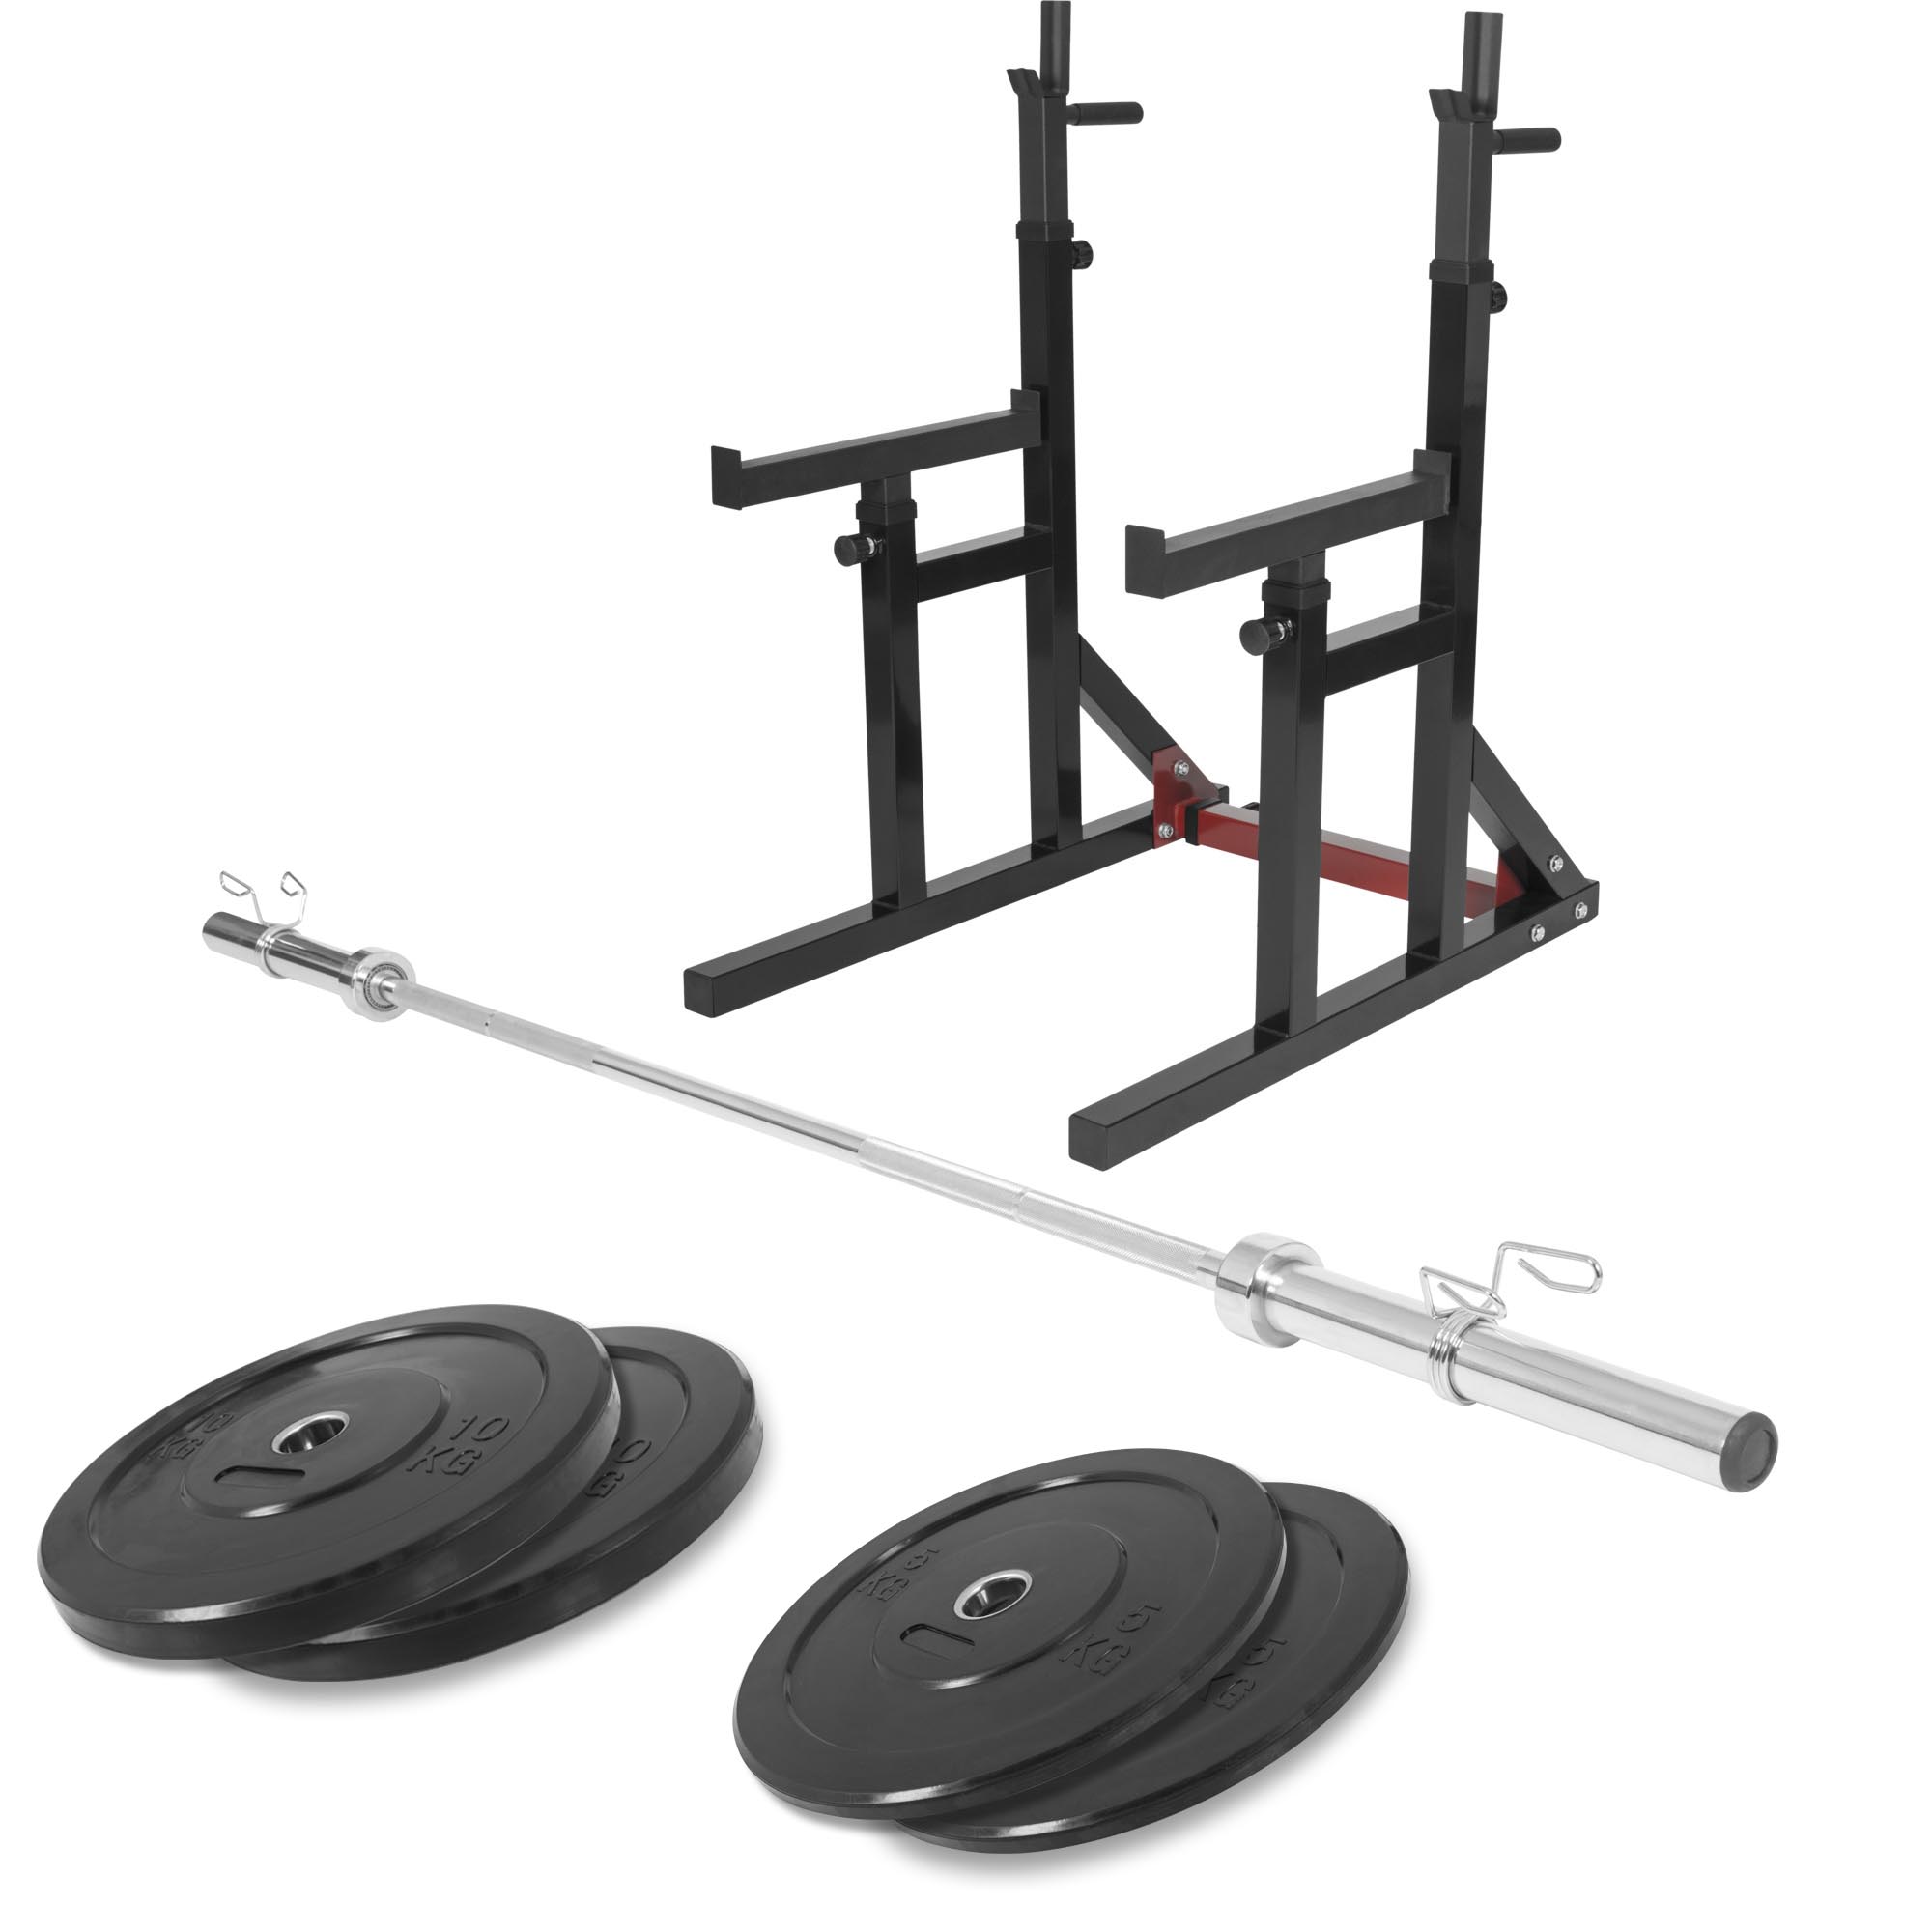 Squat rack avec barre olympique de 218cm + 30kg des poids (2x5 et 2x10) bumper en 51mm